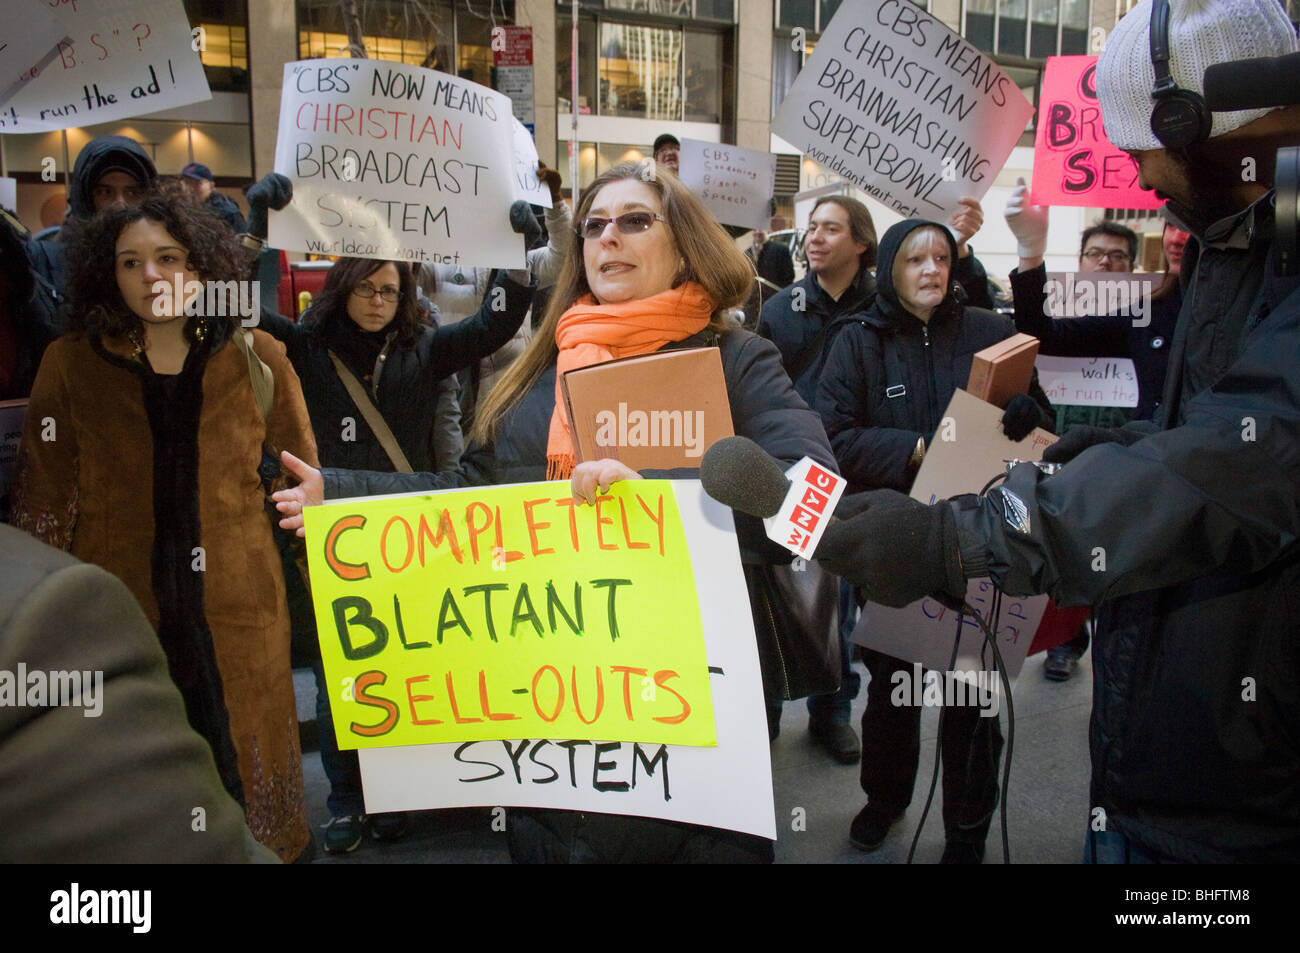 Los grupos de mujeres protesta frente a la sede de la CBS en favor del aborto y contra la pro-vida ejecutar comercial durante el superbowl Foto de stock